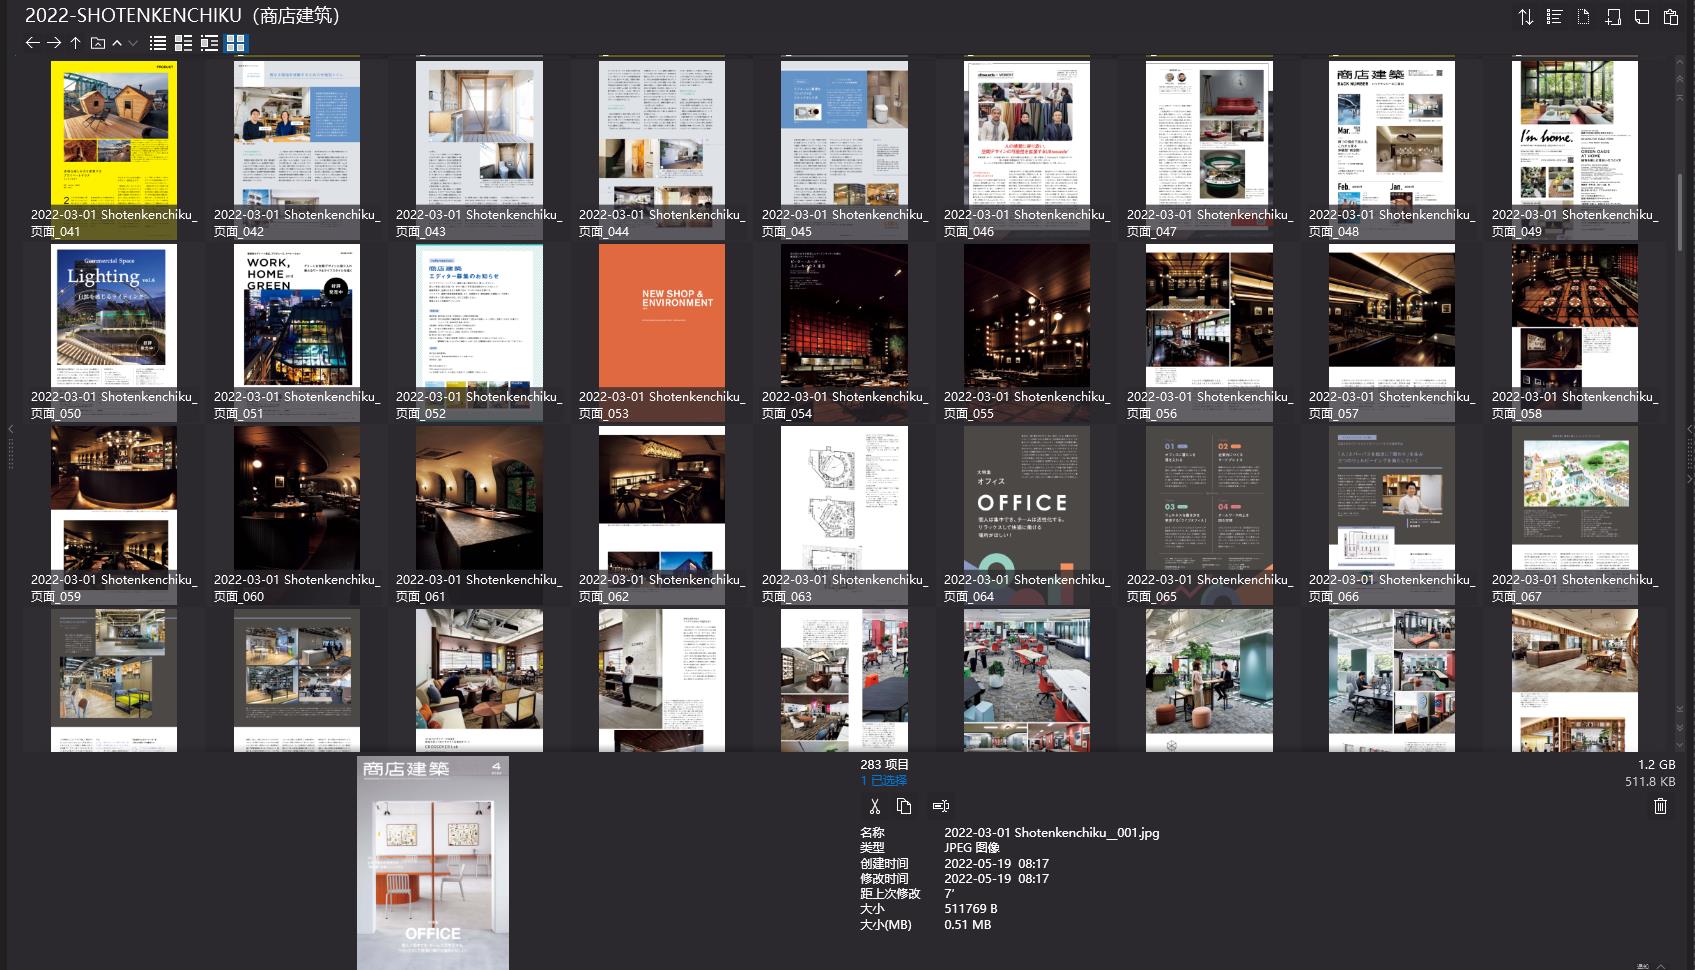 商店建築設計雜誌,Shotenkenchiku設計雜誌,室內設計電子雜誌,雜誌下載,商店建築雜誌合集